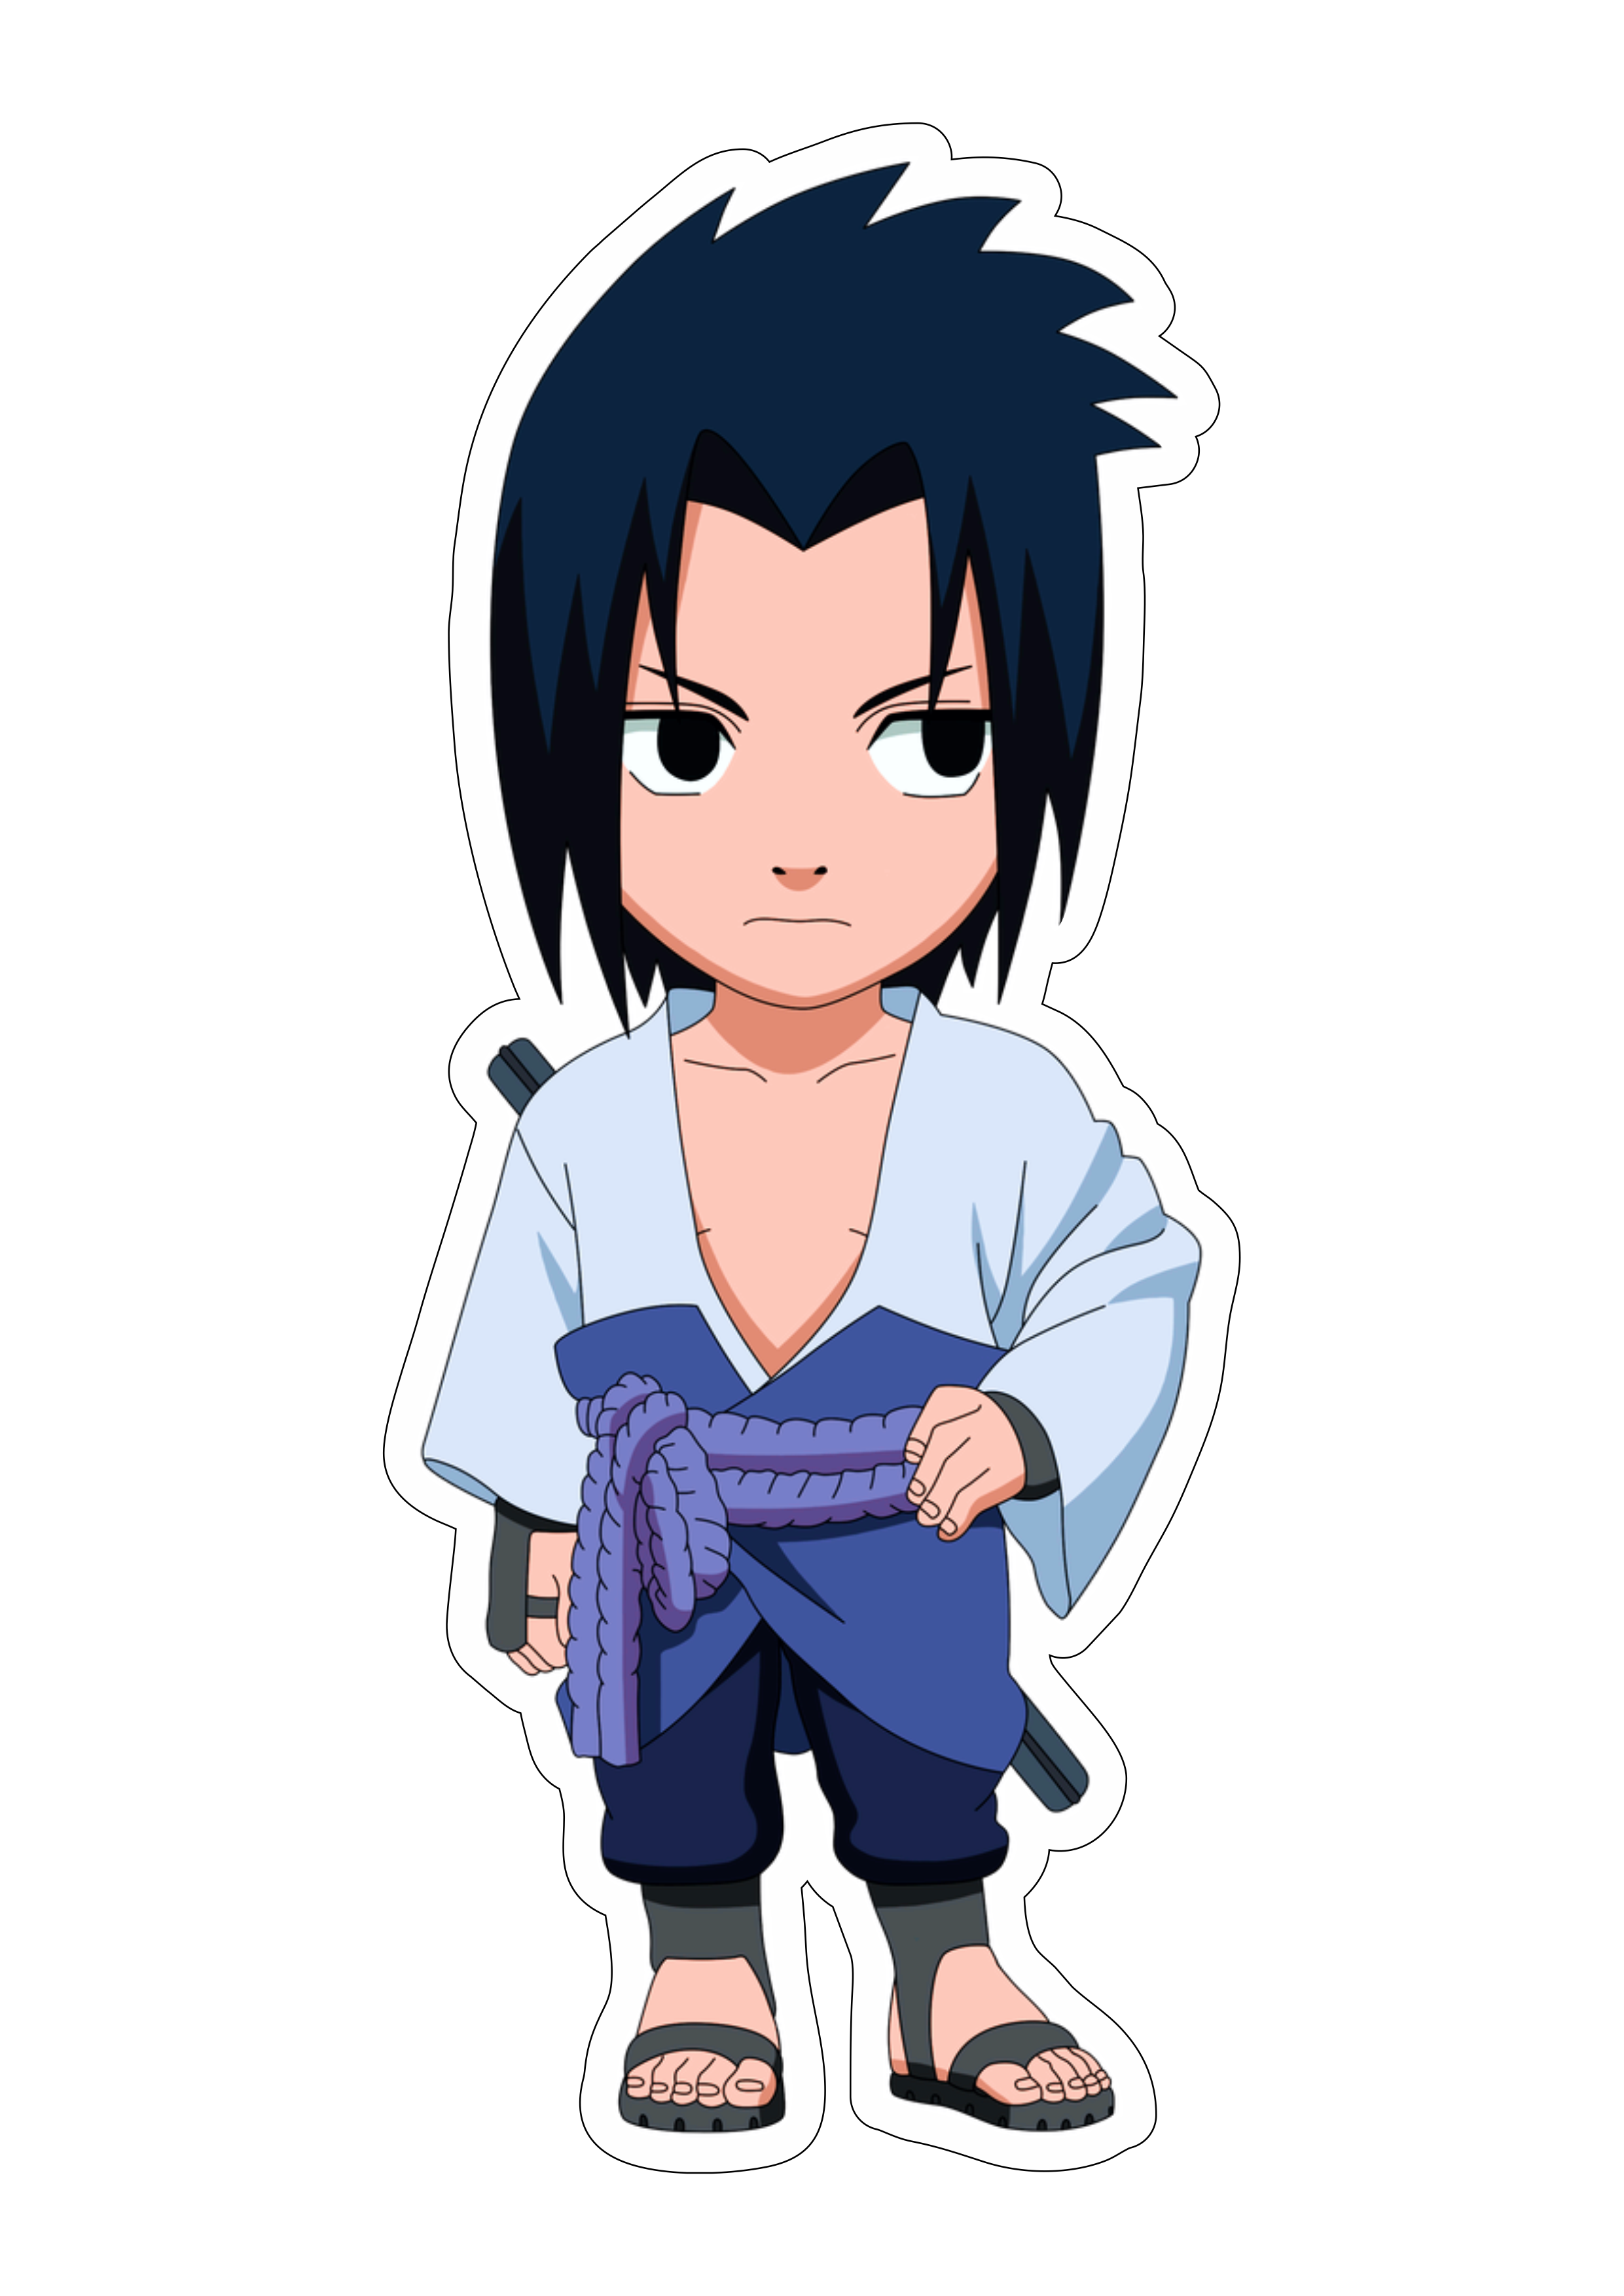 Naruto Shippuden cute chibi Sasuke com espada Sharingam ninja vila oculta da folha desenho infantil anime artes gráficas design Orochimaru png